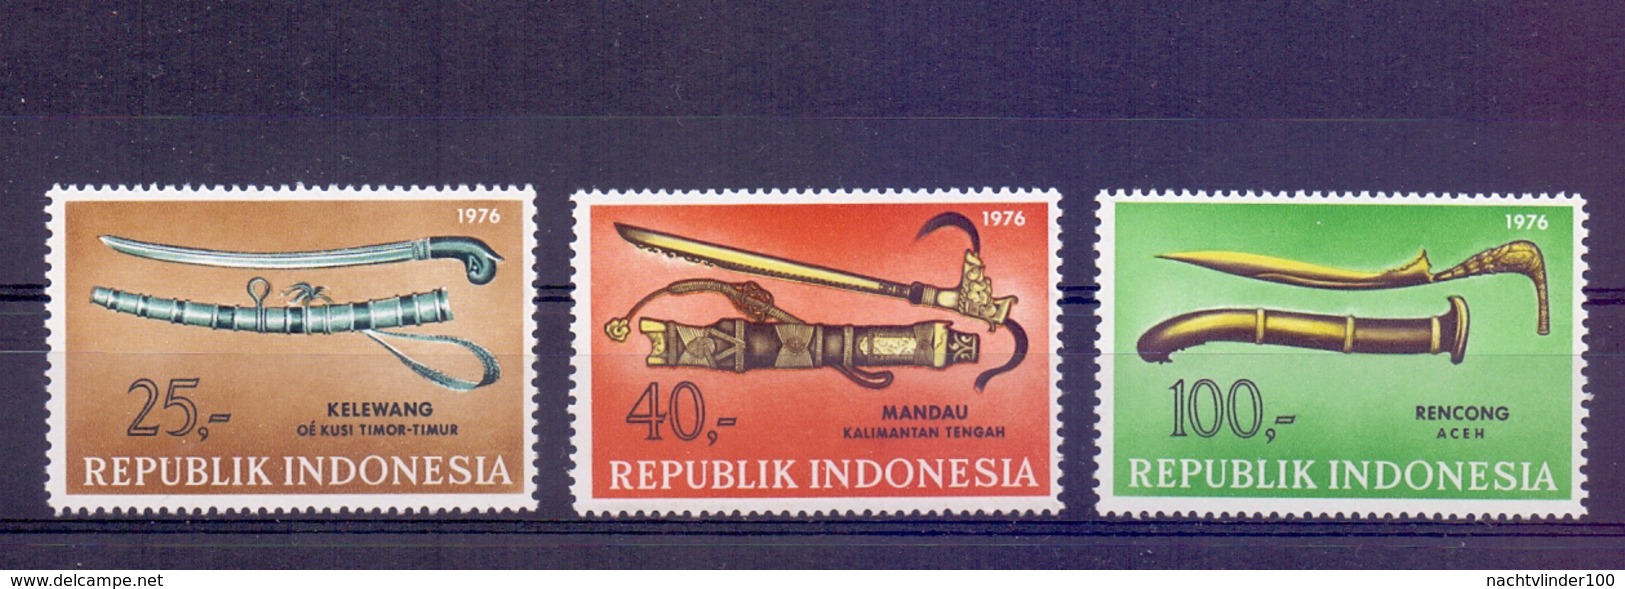 Mgm0864  KUNST EN CULTUUR WAPENS ZWAARD SWORD INDONESIA 1976 PF/MNH - Indonesien